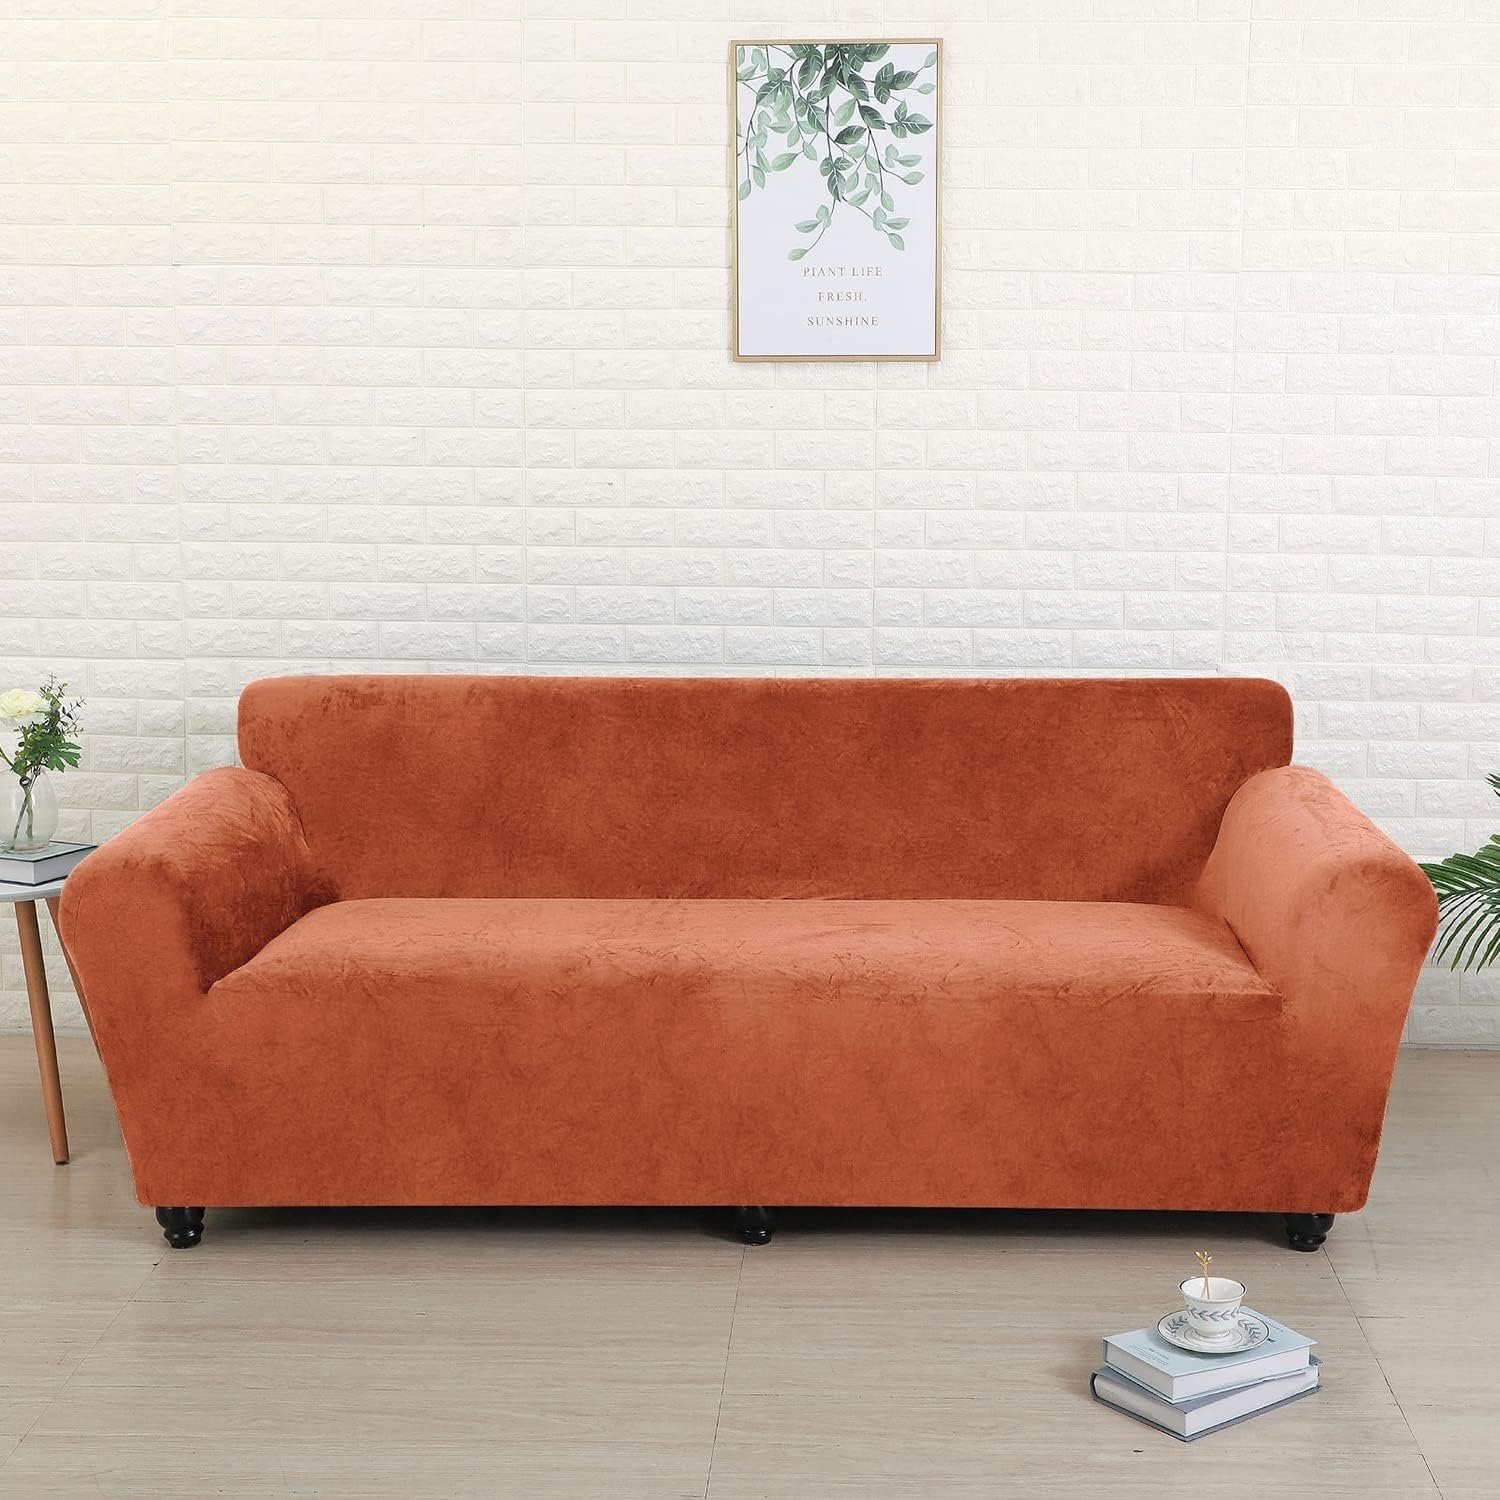 3 Stock, Stretch Couchbezug 185-230cm Sofahusse Orange Samt Sitzer Antirutsch, Sofabezug Sofabezug UE